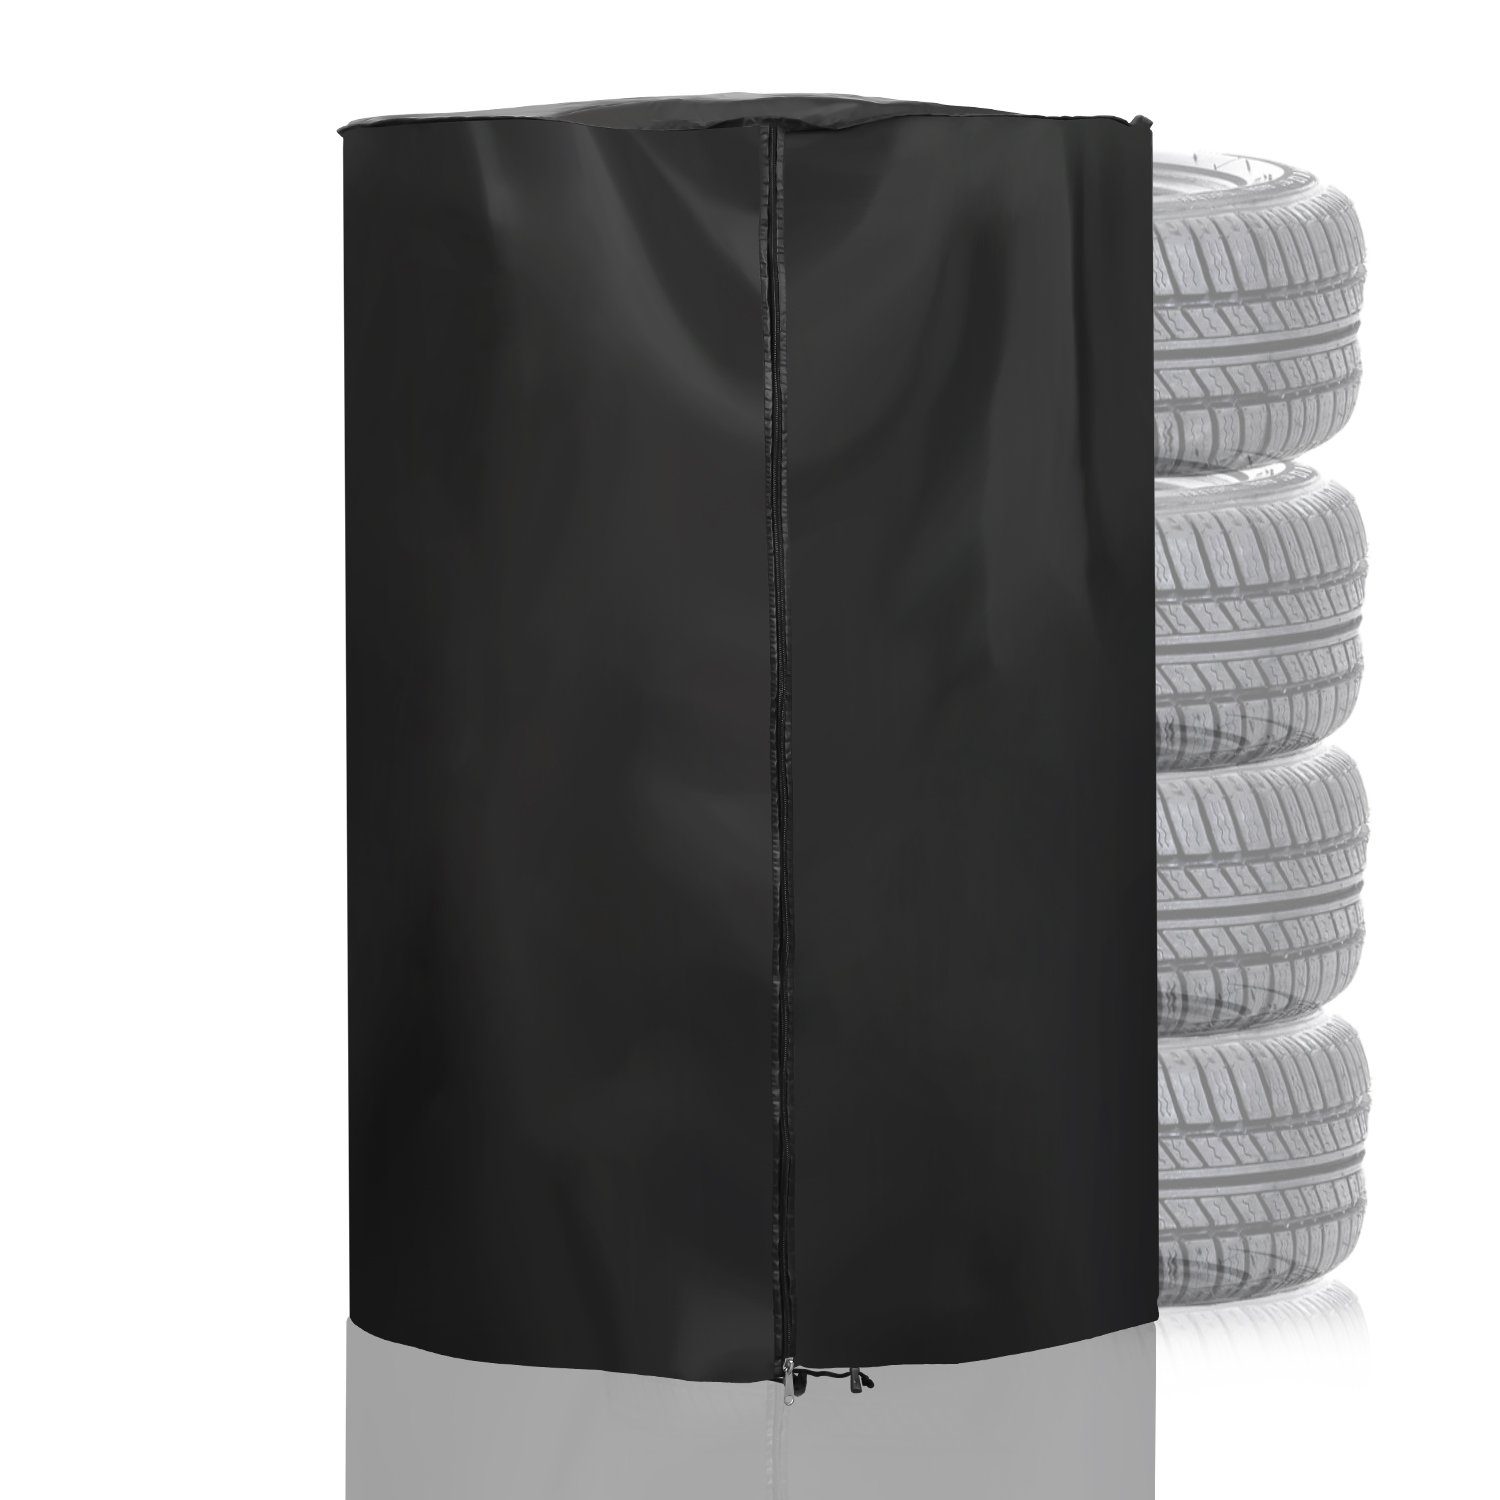 Clanmacy Schutz-Set Reifentasche Reifenhülle Reifensack Schutzhülle für 4 Reifen 80*120cm